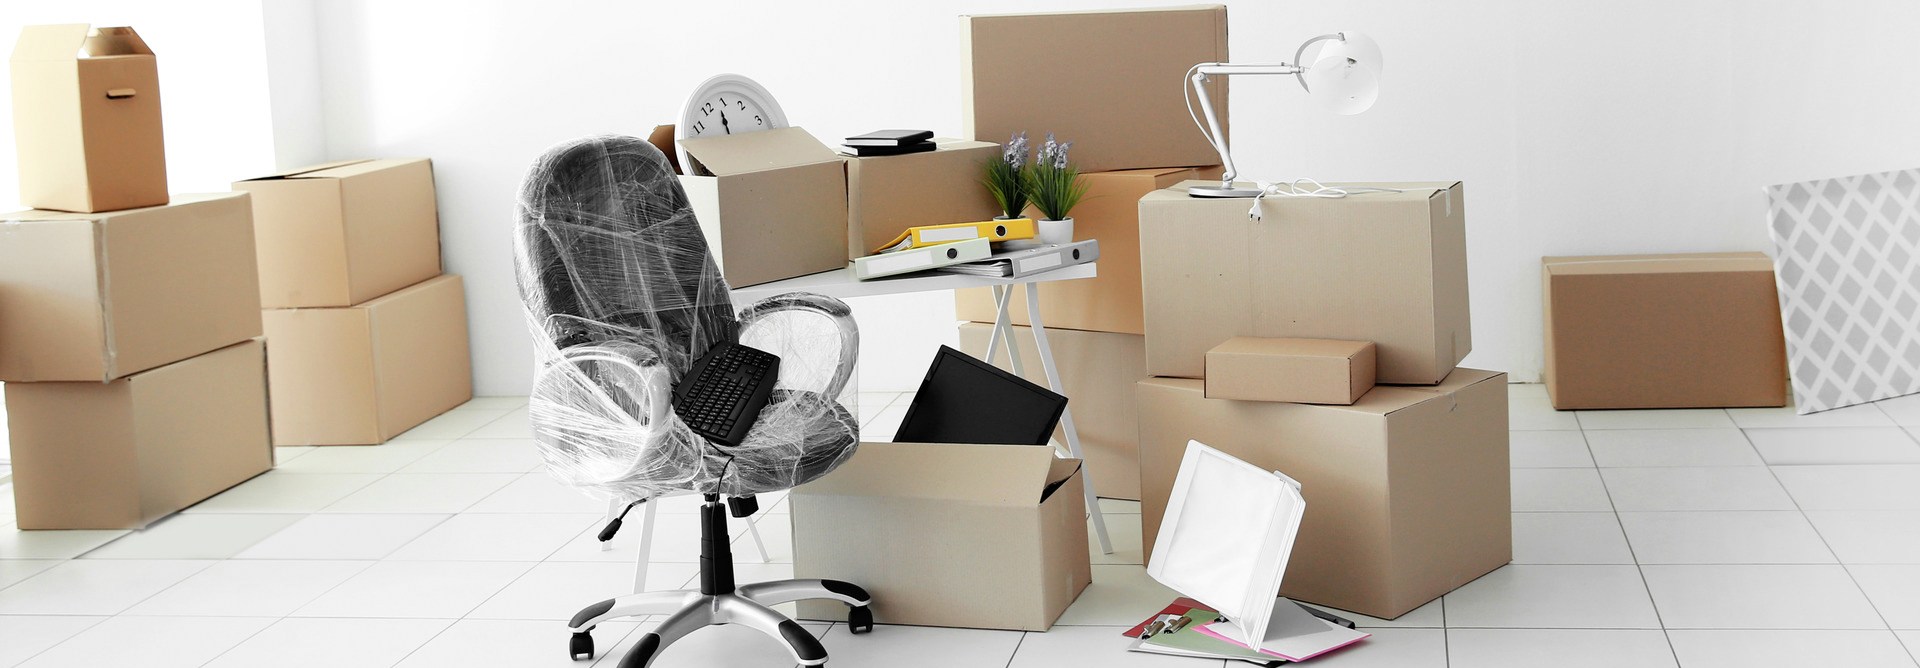 Офисный переезд – полезные советы по правильной организации